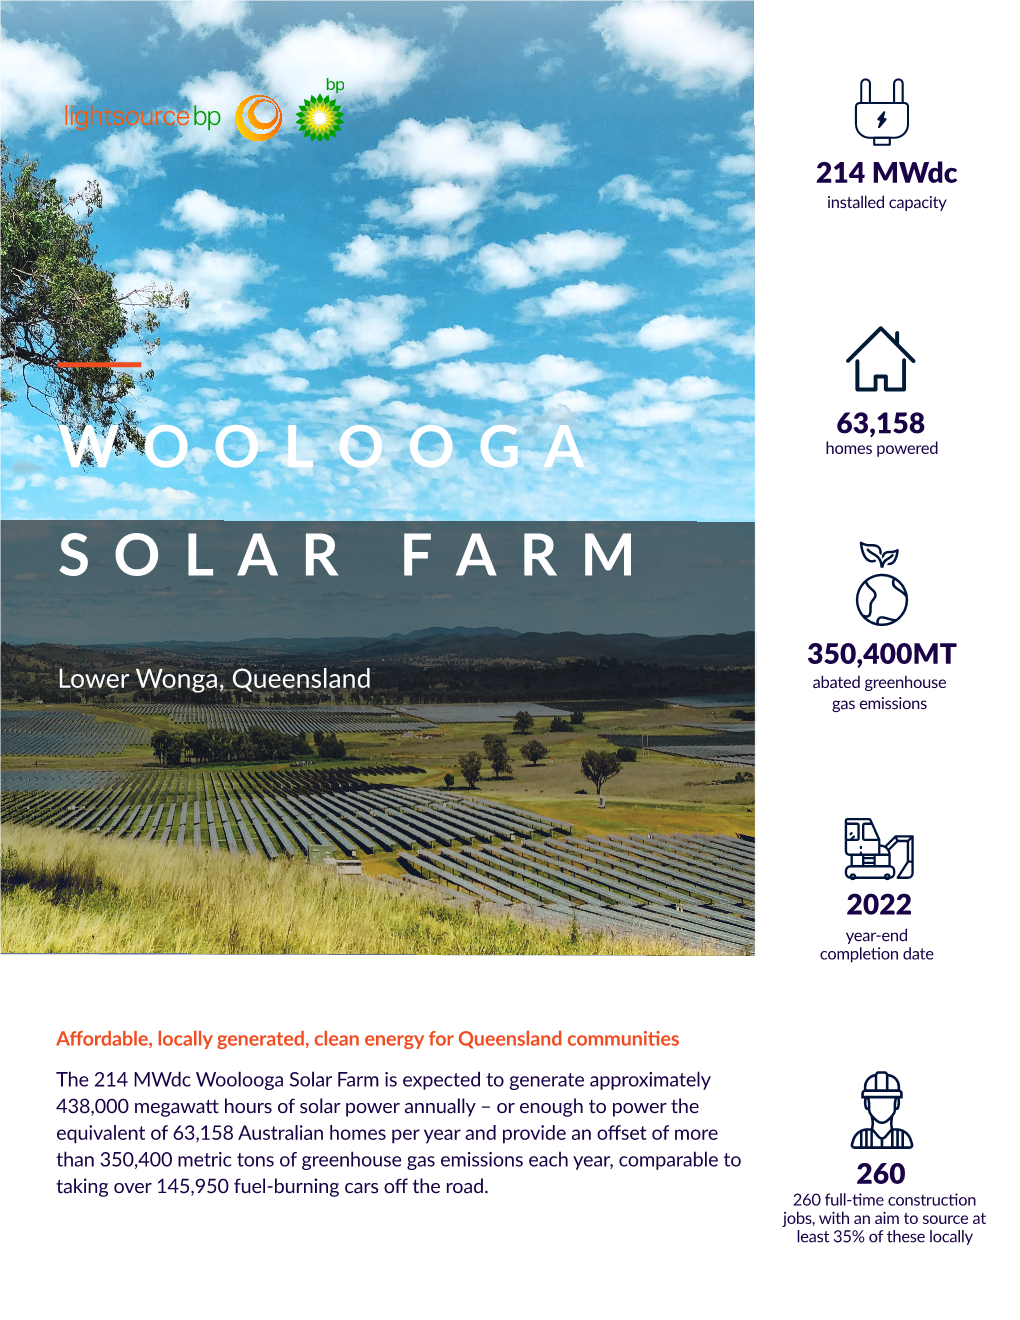 Woolooga Solar Farm